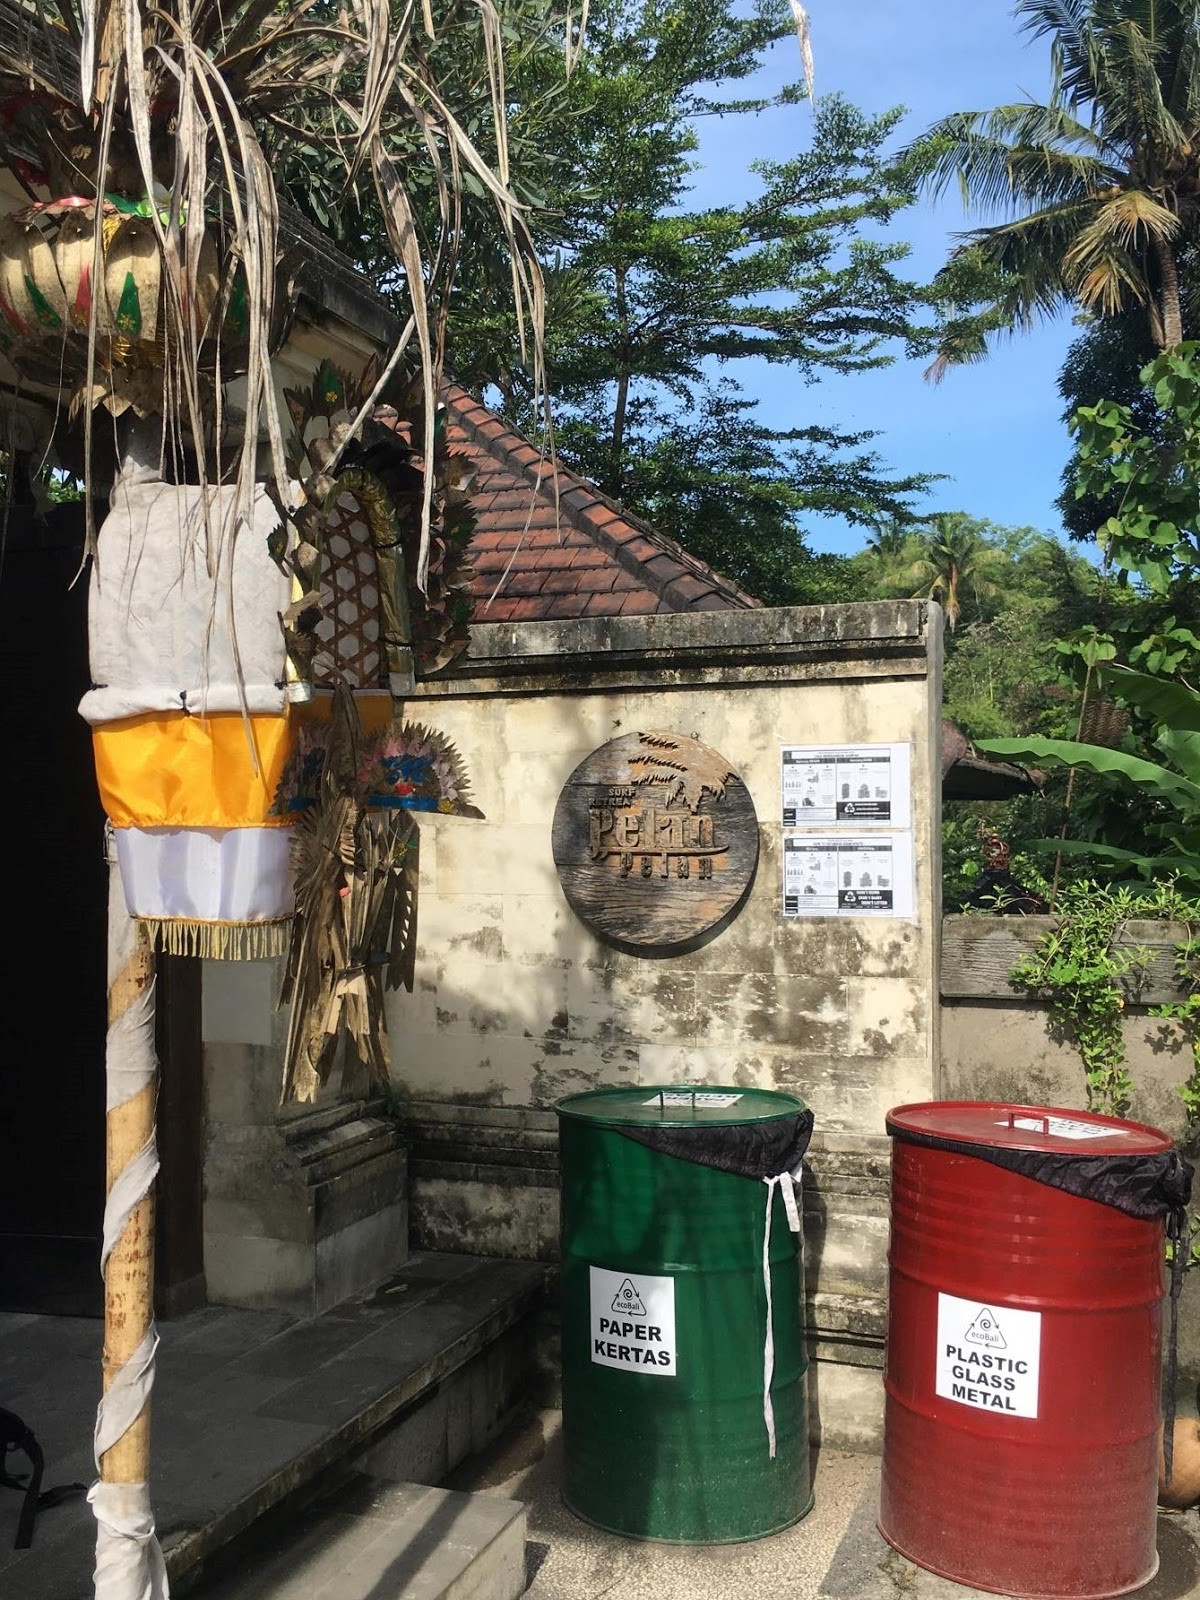 Pelan Pelan Bali Waste Management | Pelan Pelan Bali